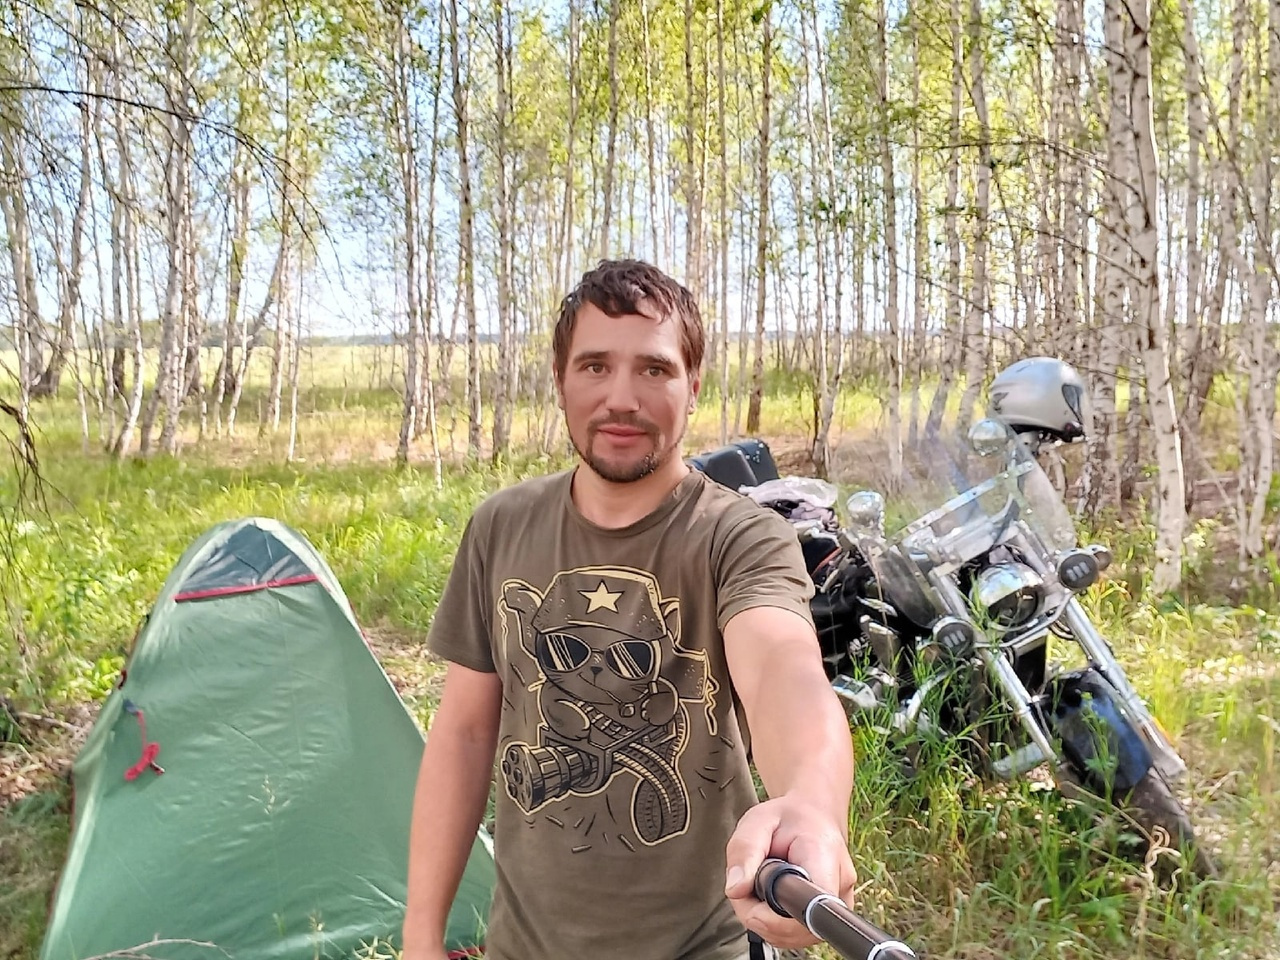 Сергей мог отправиться в дальний путь на мотоцикле, захватив с собой палатку